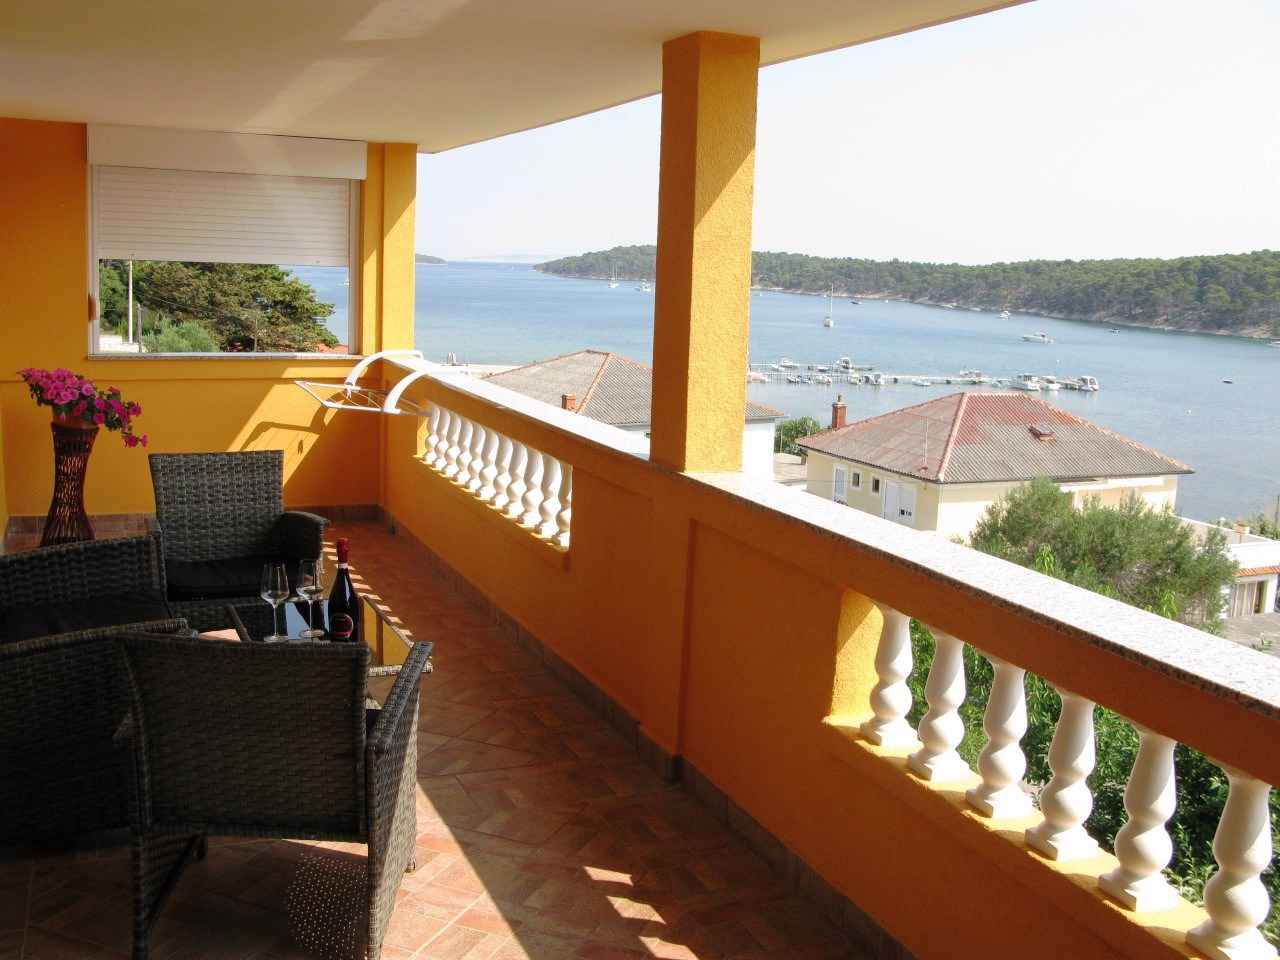 Ferienwohnung mit Balkon und Meerblick   kroatische Inseln